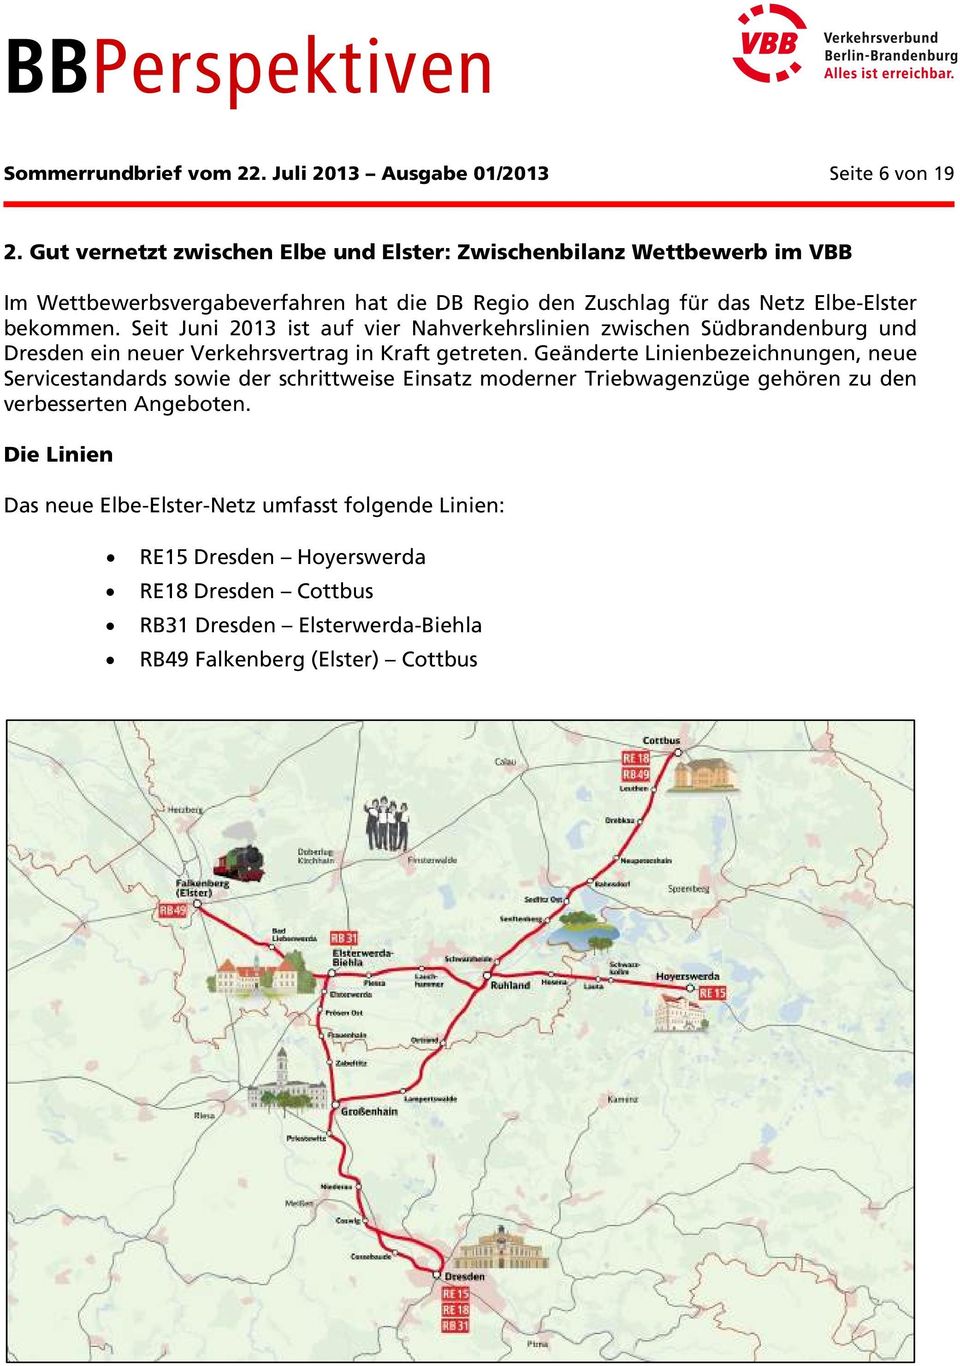 Seit Juni 2013 ist auf vier Nahverkehrslinien zwischen Südbrandenburg und Dresden ein neuer Verkehrsvertrag in Kraft getreten.